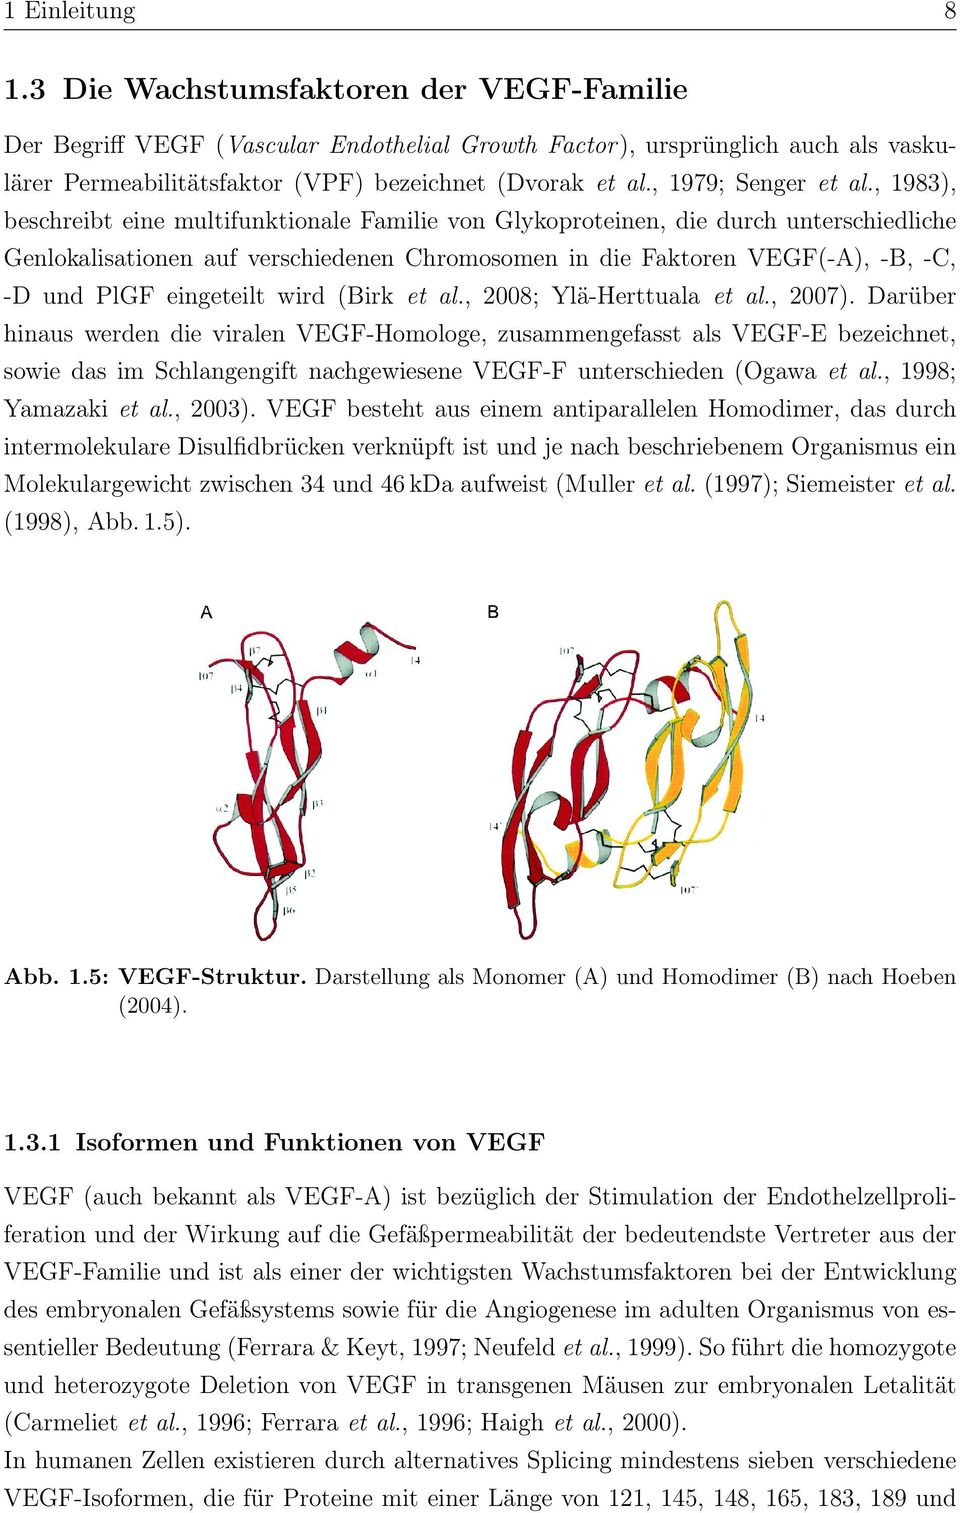 , 1983), beschreibt eine multifunktionale Familie von Glykoproteinen, die durch unterschiedliche Genlokalisationen auf verschiedenen Chromosomen in die Faktoren VEGF(-A), -B, -C, -D und PlGF